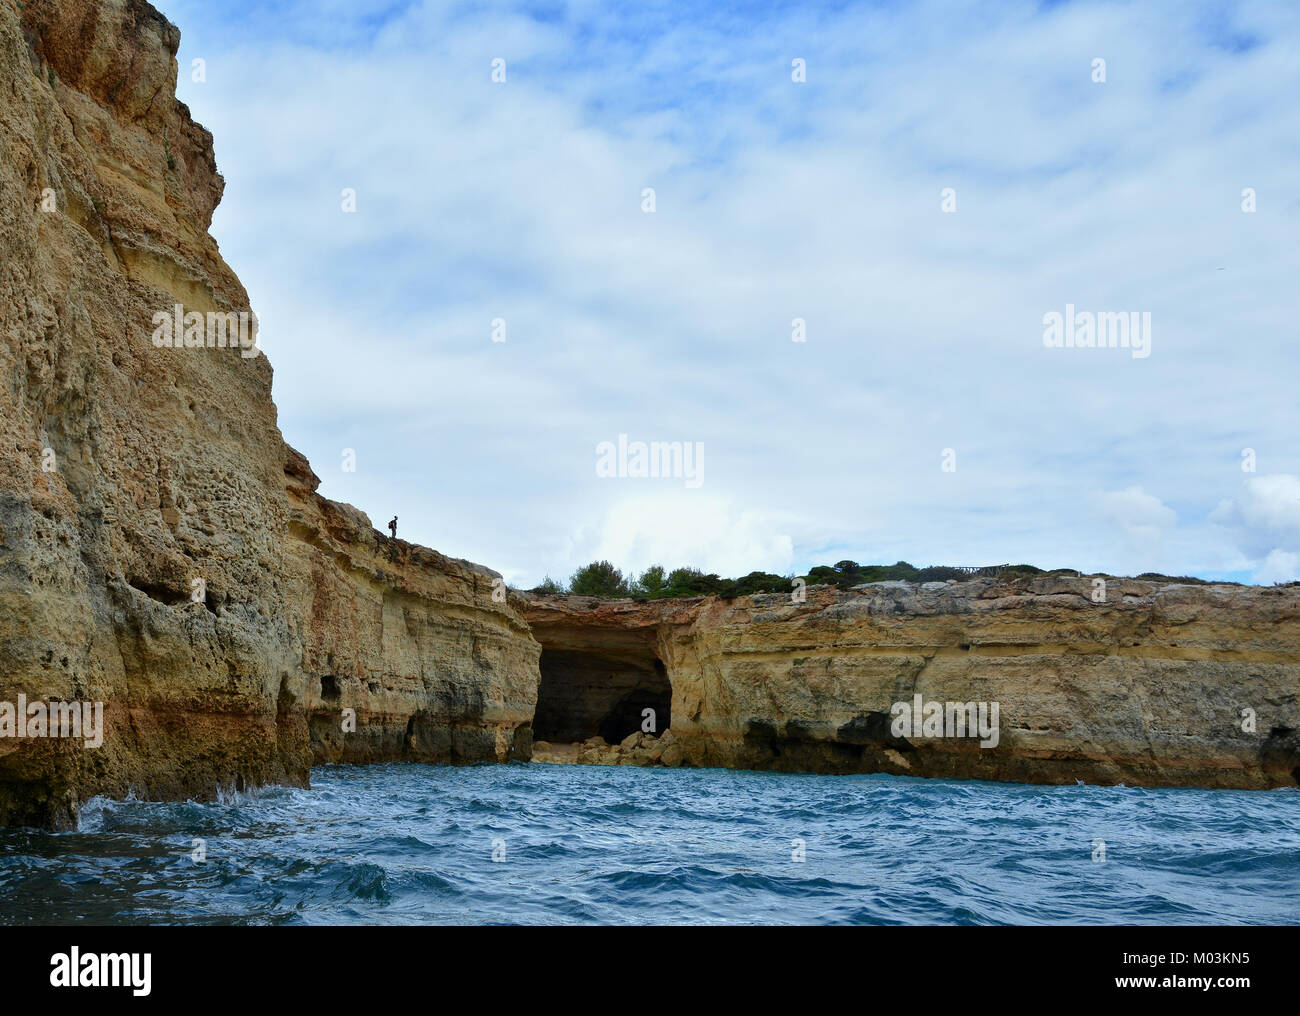 Meer Höhle an der Küste der Algarve in der Nähe von Benagil, Portugal, Europa. Natur Geologie vom Boot Reise gesehen. Stockfoto